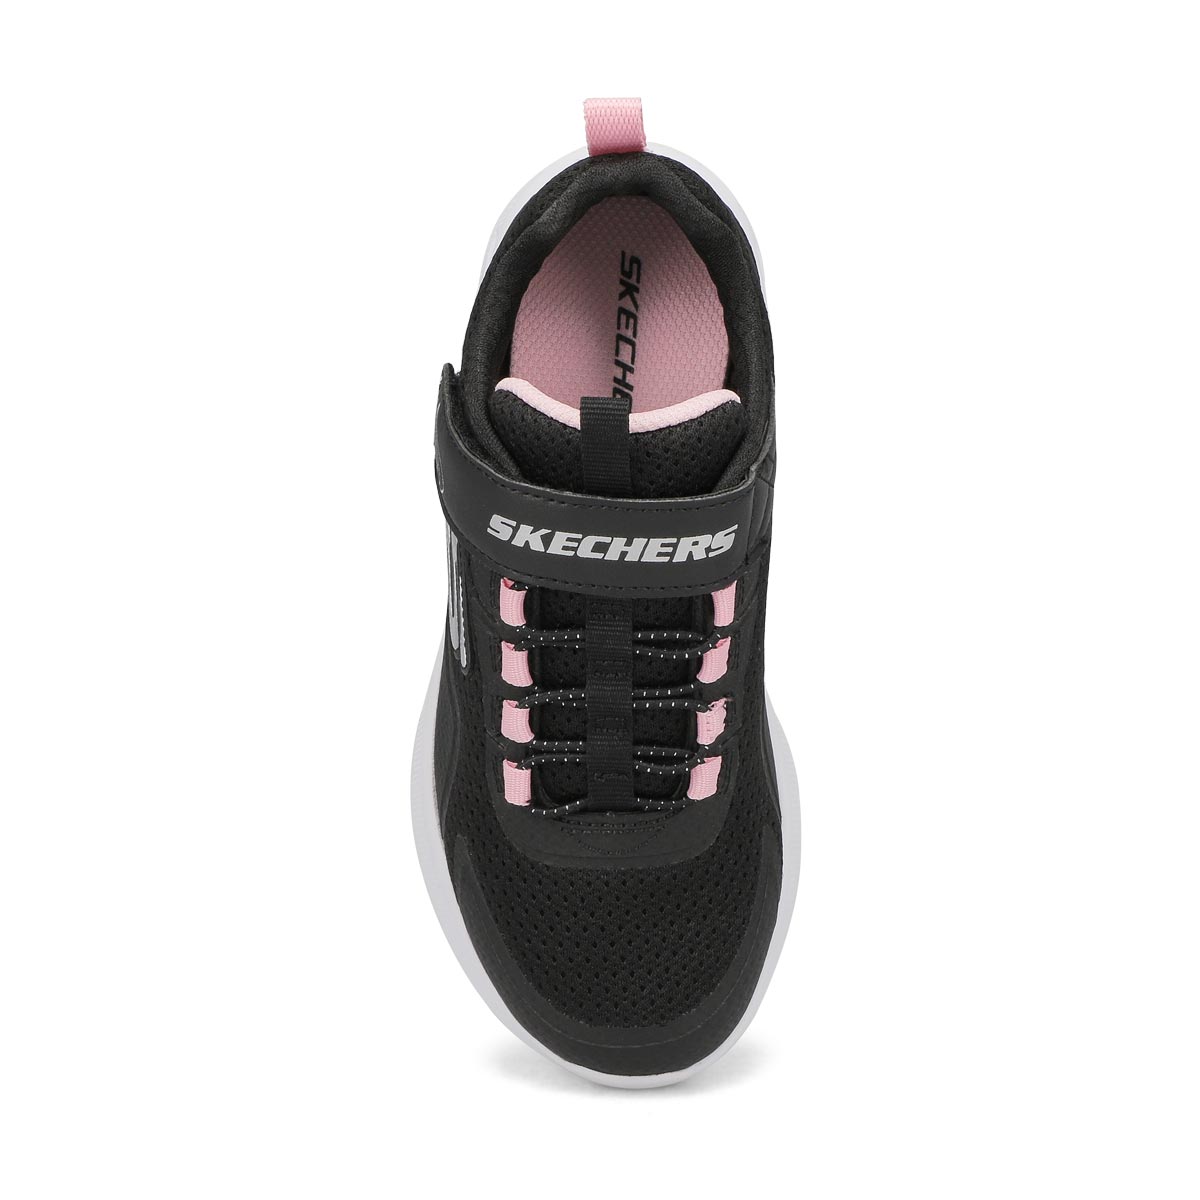 2023 Designer Kids Sneakers Black From Vipsellershoes, $10.46